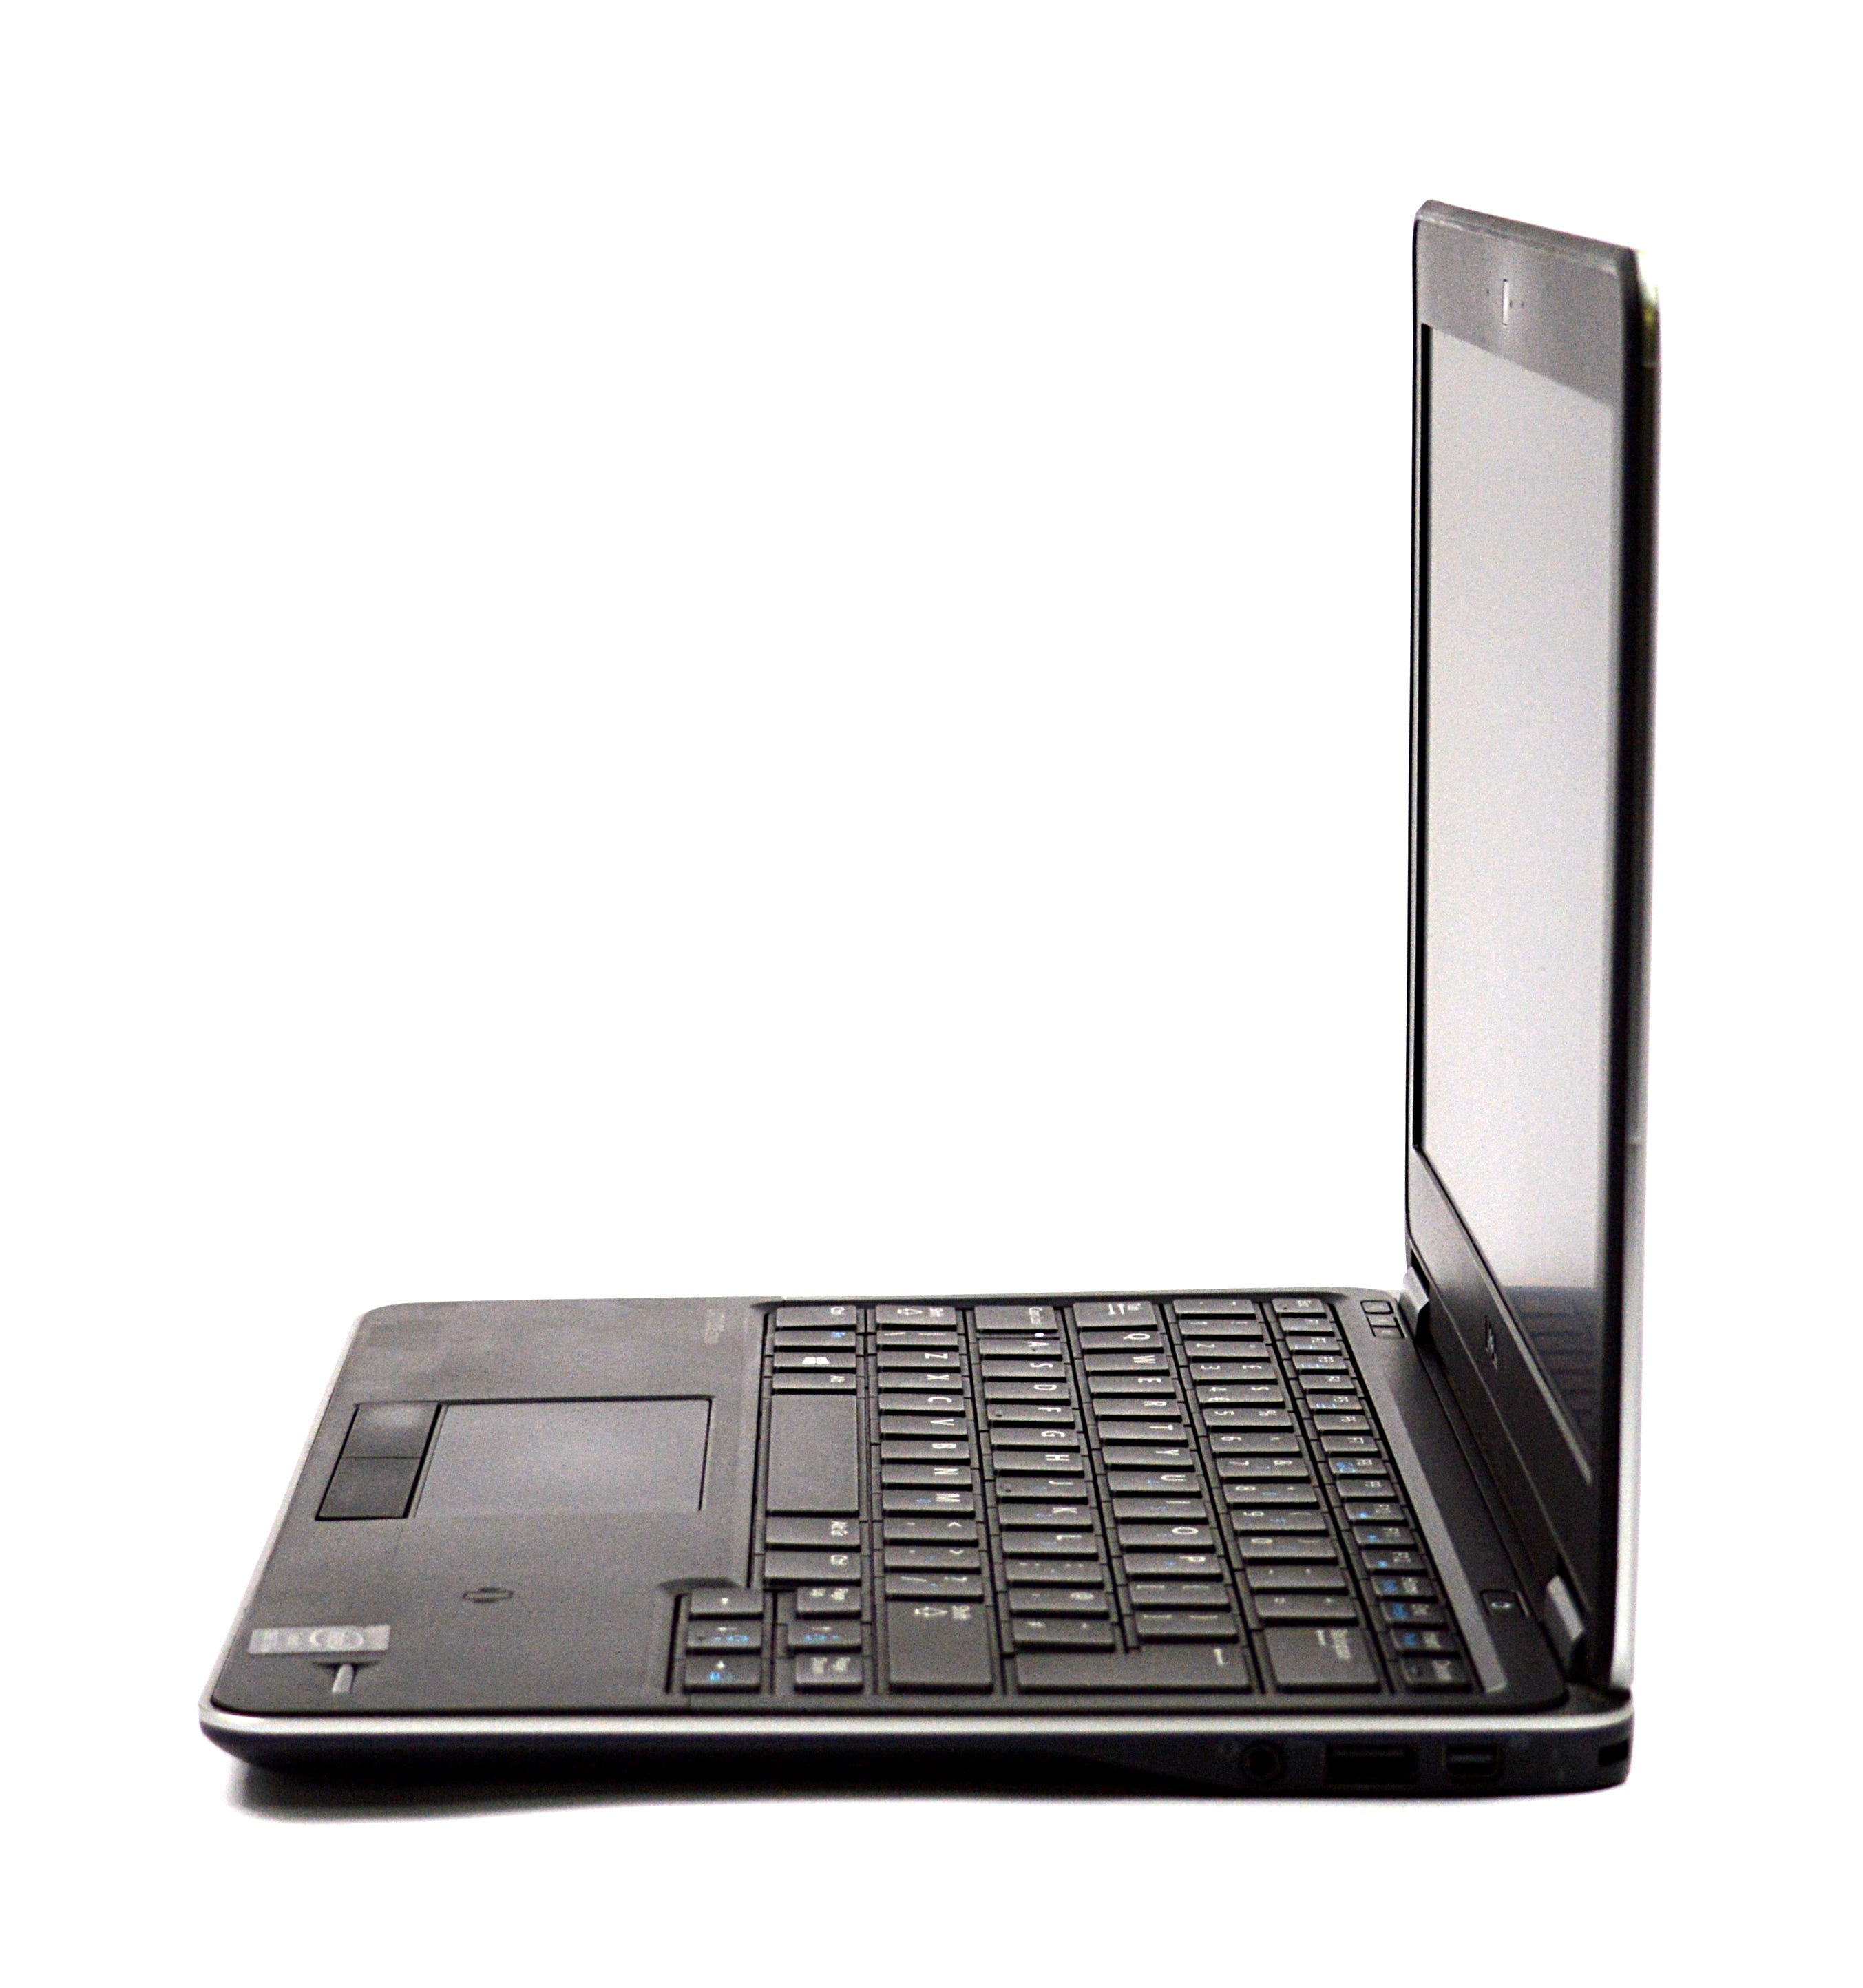 Dell Latitude E7240 Laptop, 12.5" i7 4th Gen, 8GB RAM, 128GB SSD